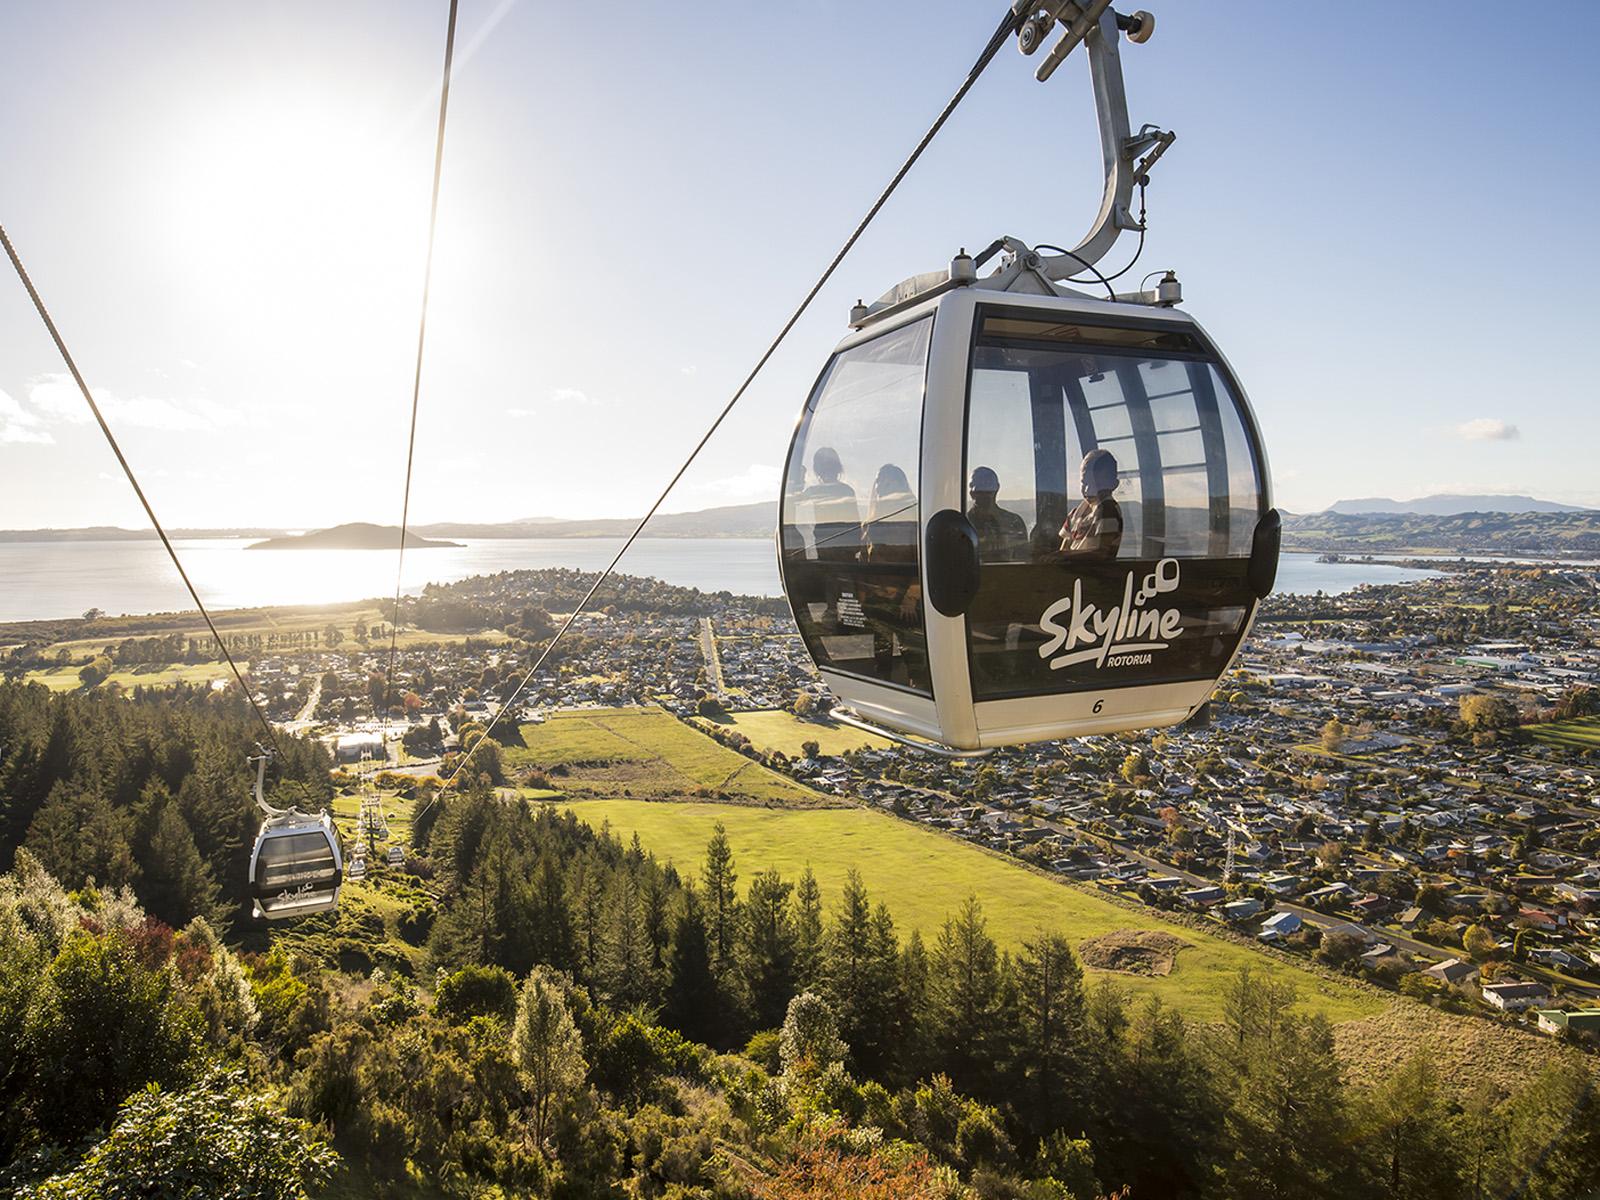 The Rotorua gondola in the air heading towards a sunset